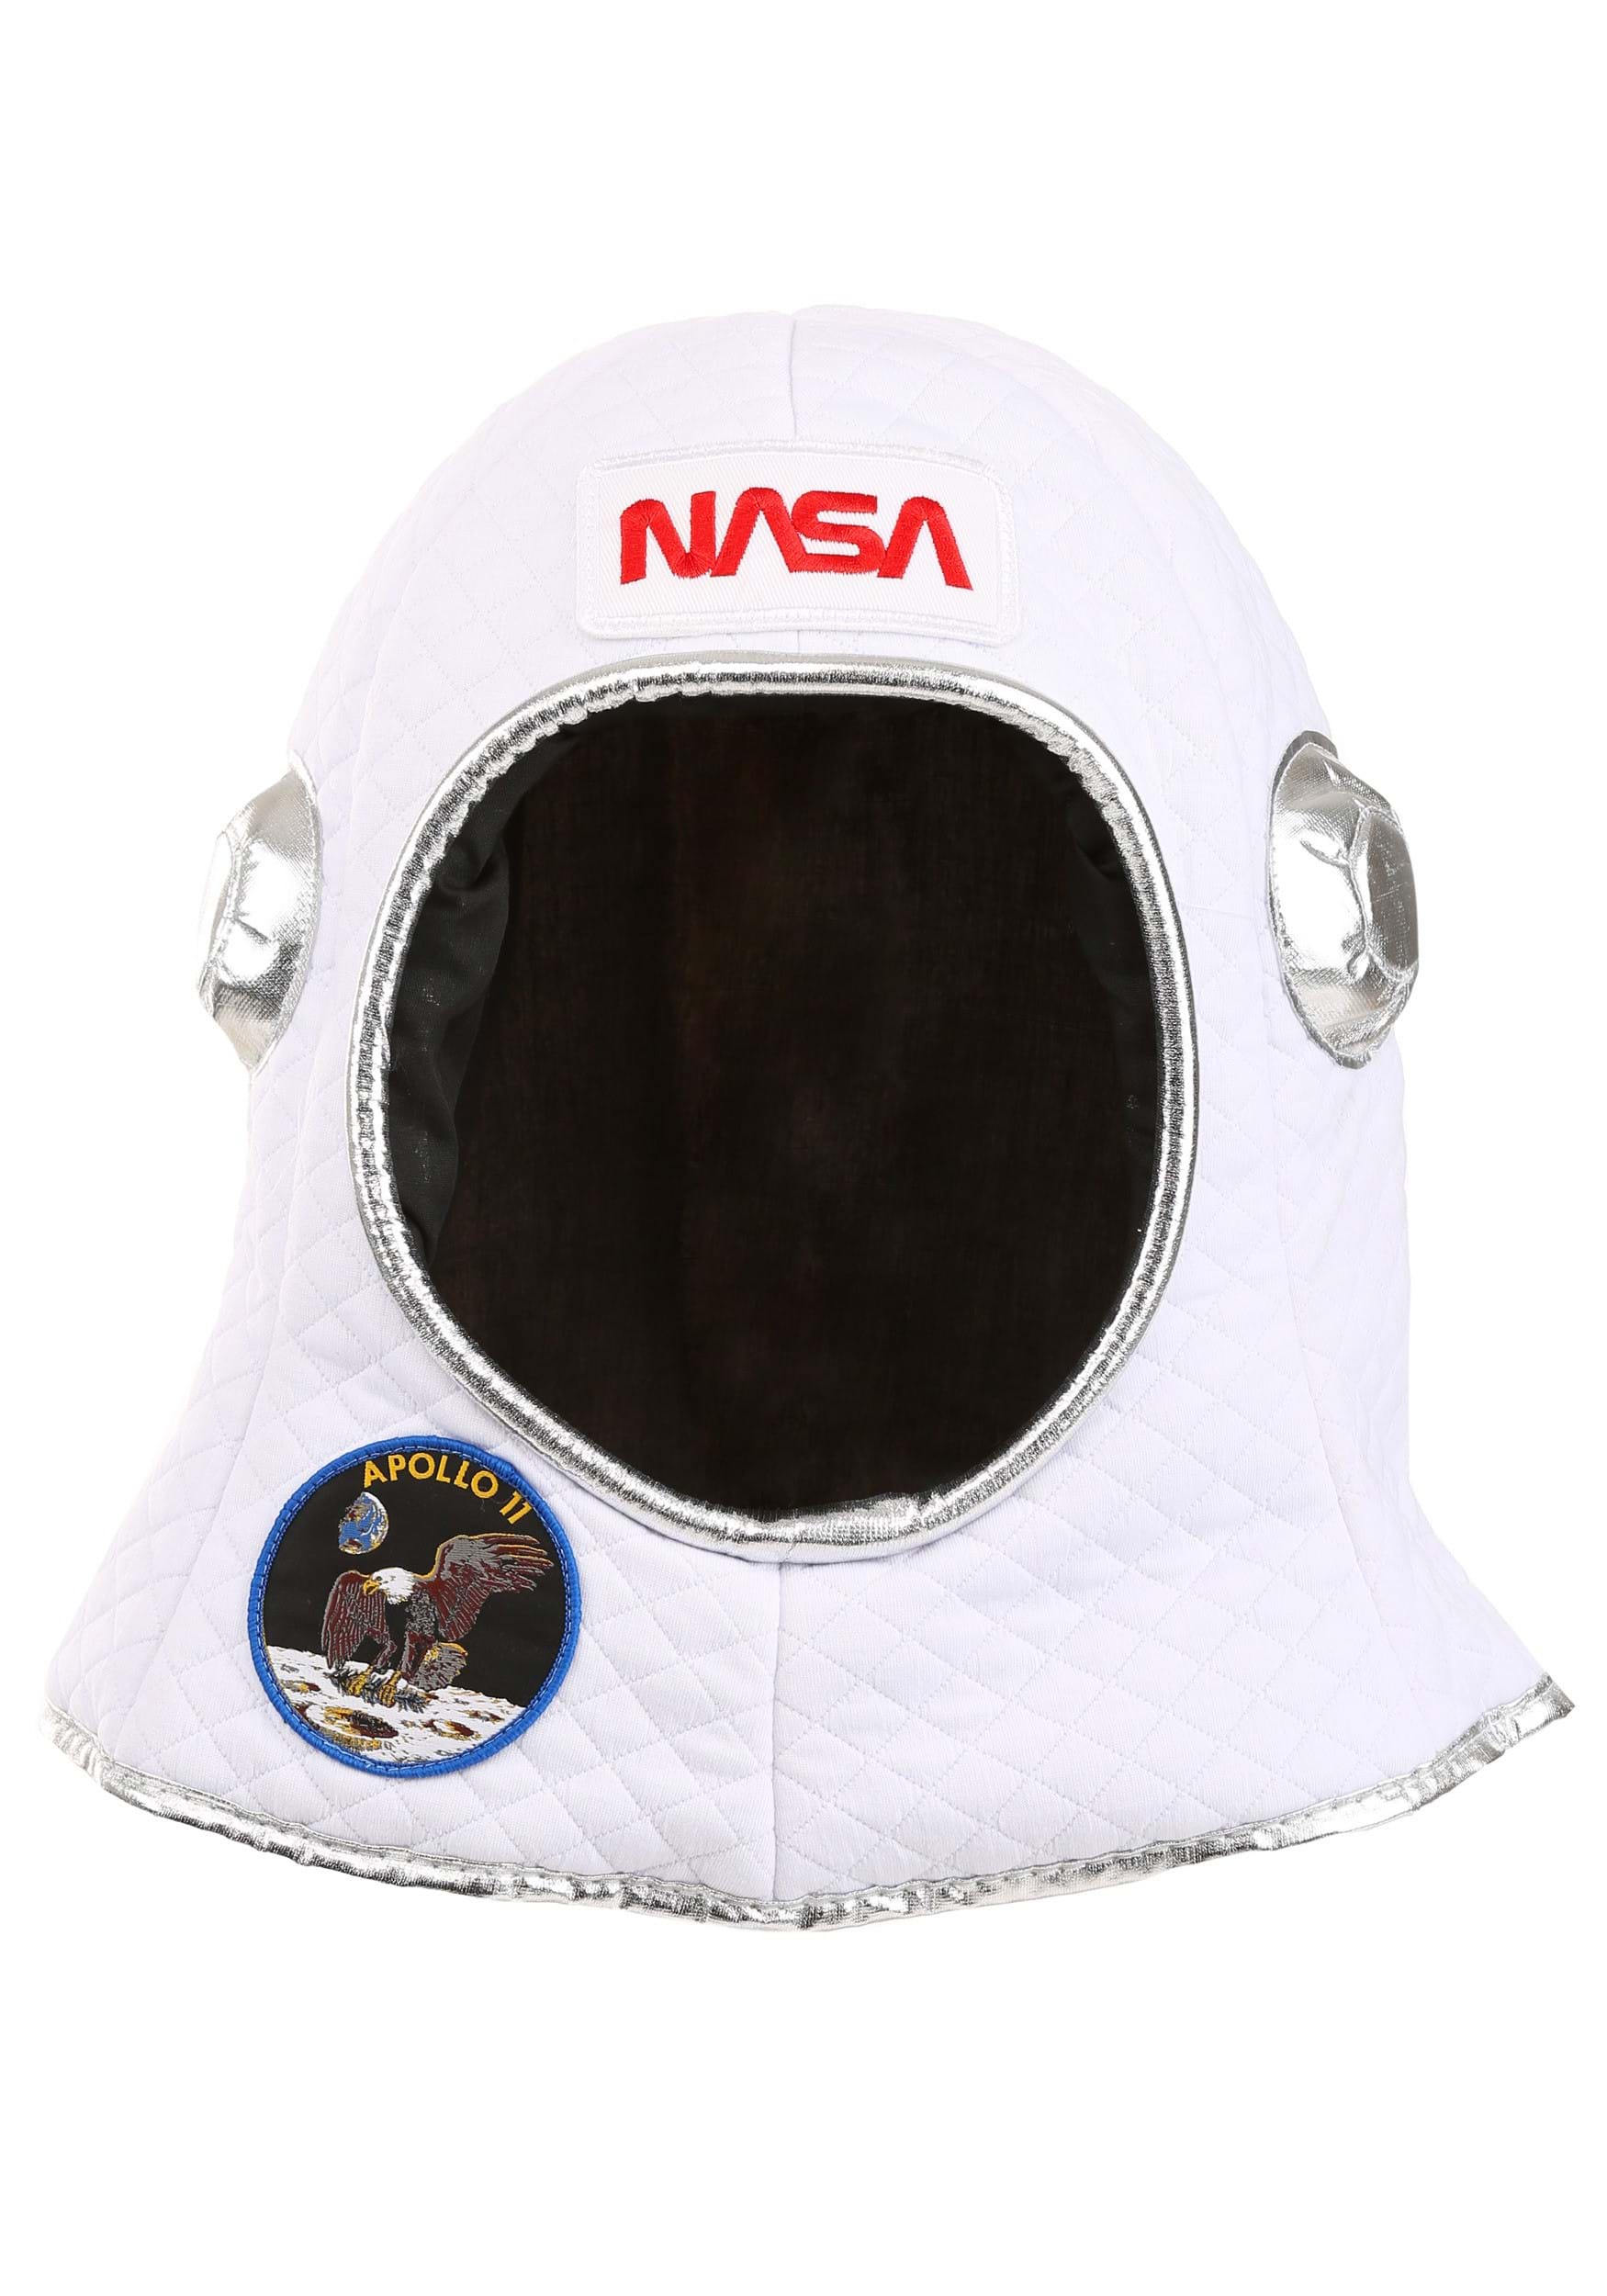 Astronaut Space Costume Plush Helmet